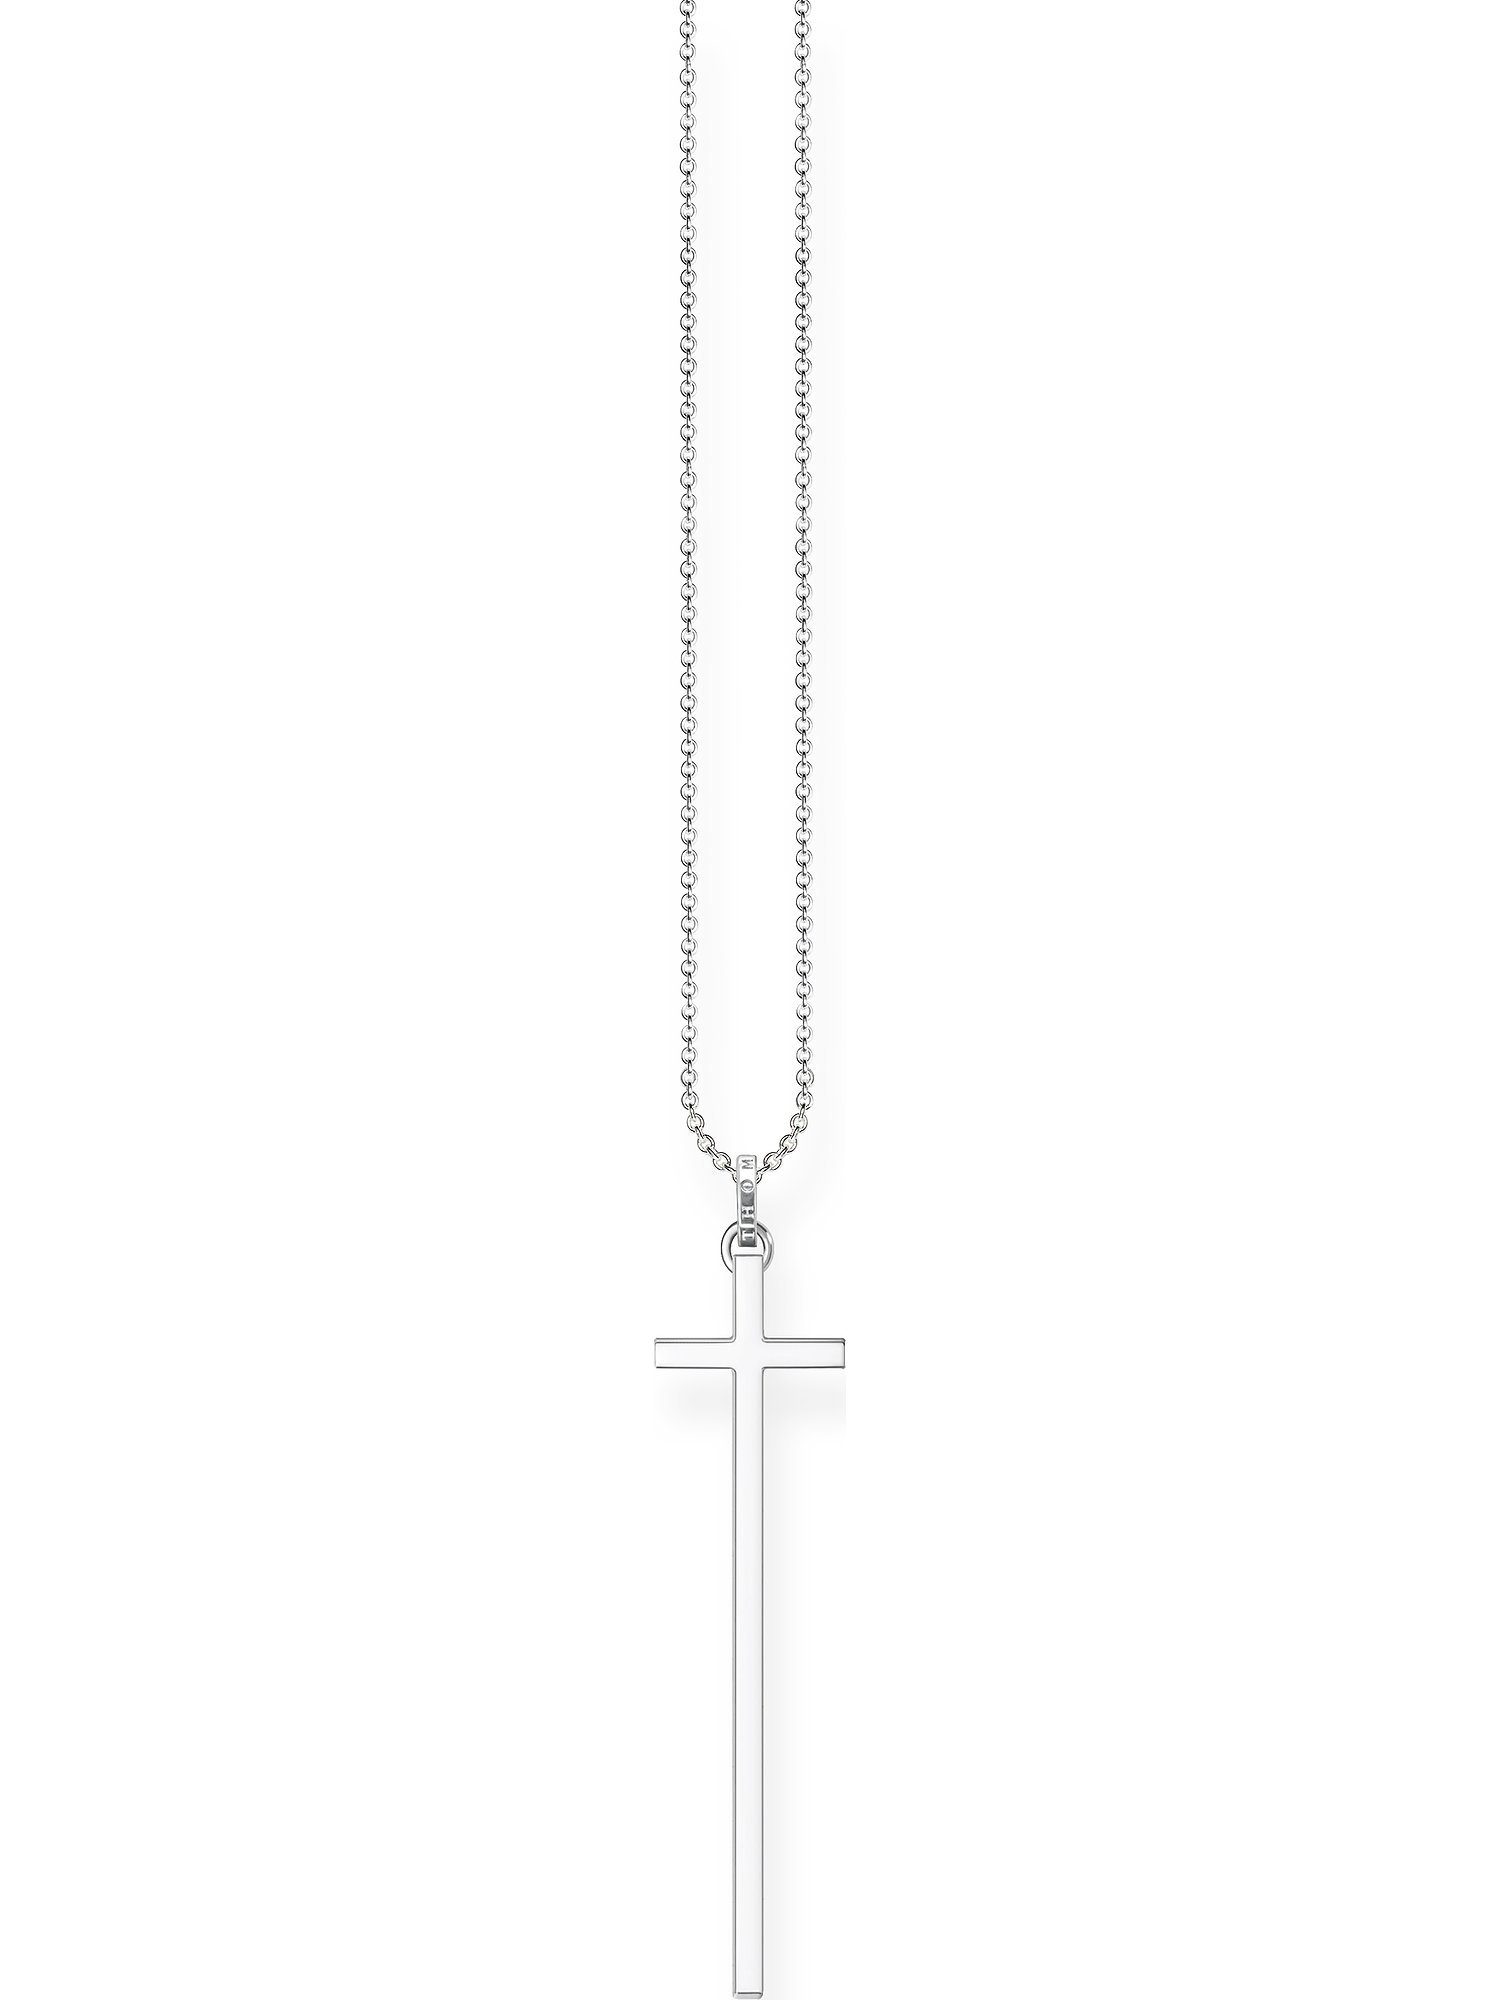 THOMAS SABO Silberkette Thomas Sabo Damen-Kette 925er Silber, Länge: 80 cm,  Breite: 1,3 cm, Stärke: 0,1 mm, Anhänger Länge: 1,3 cm